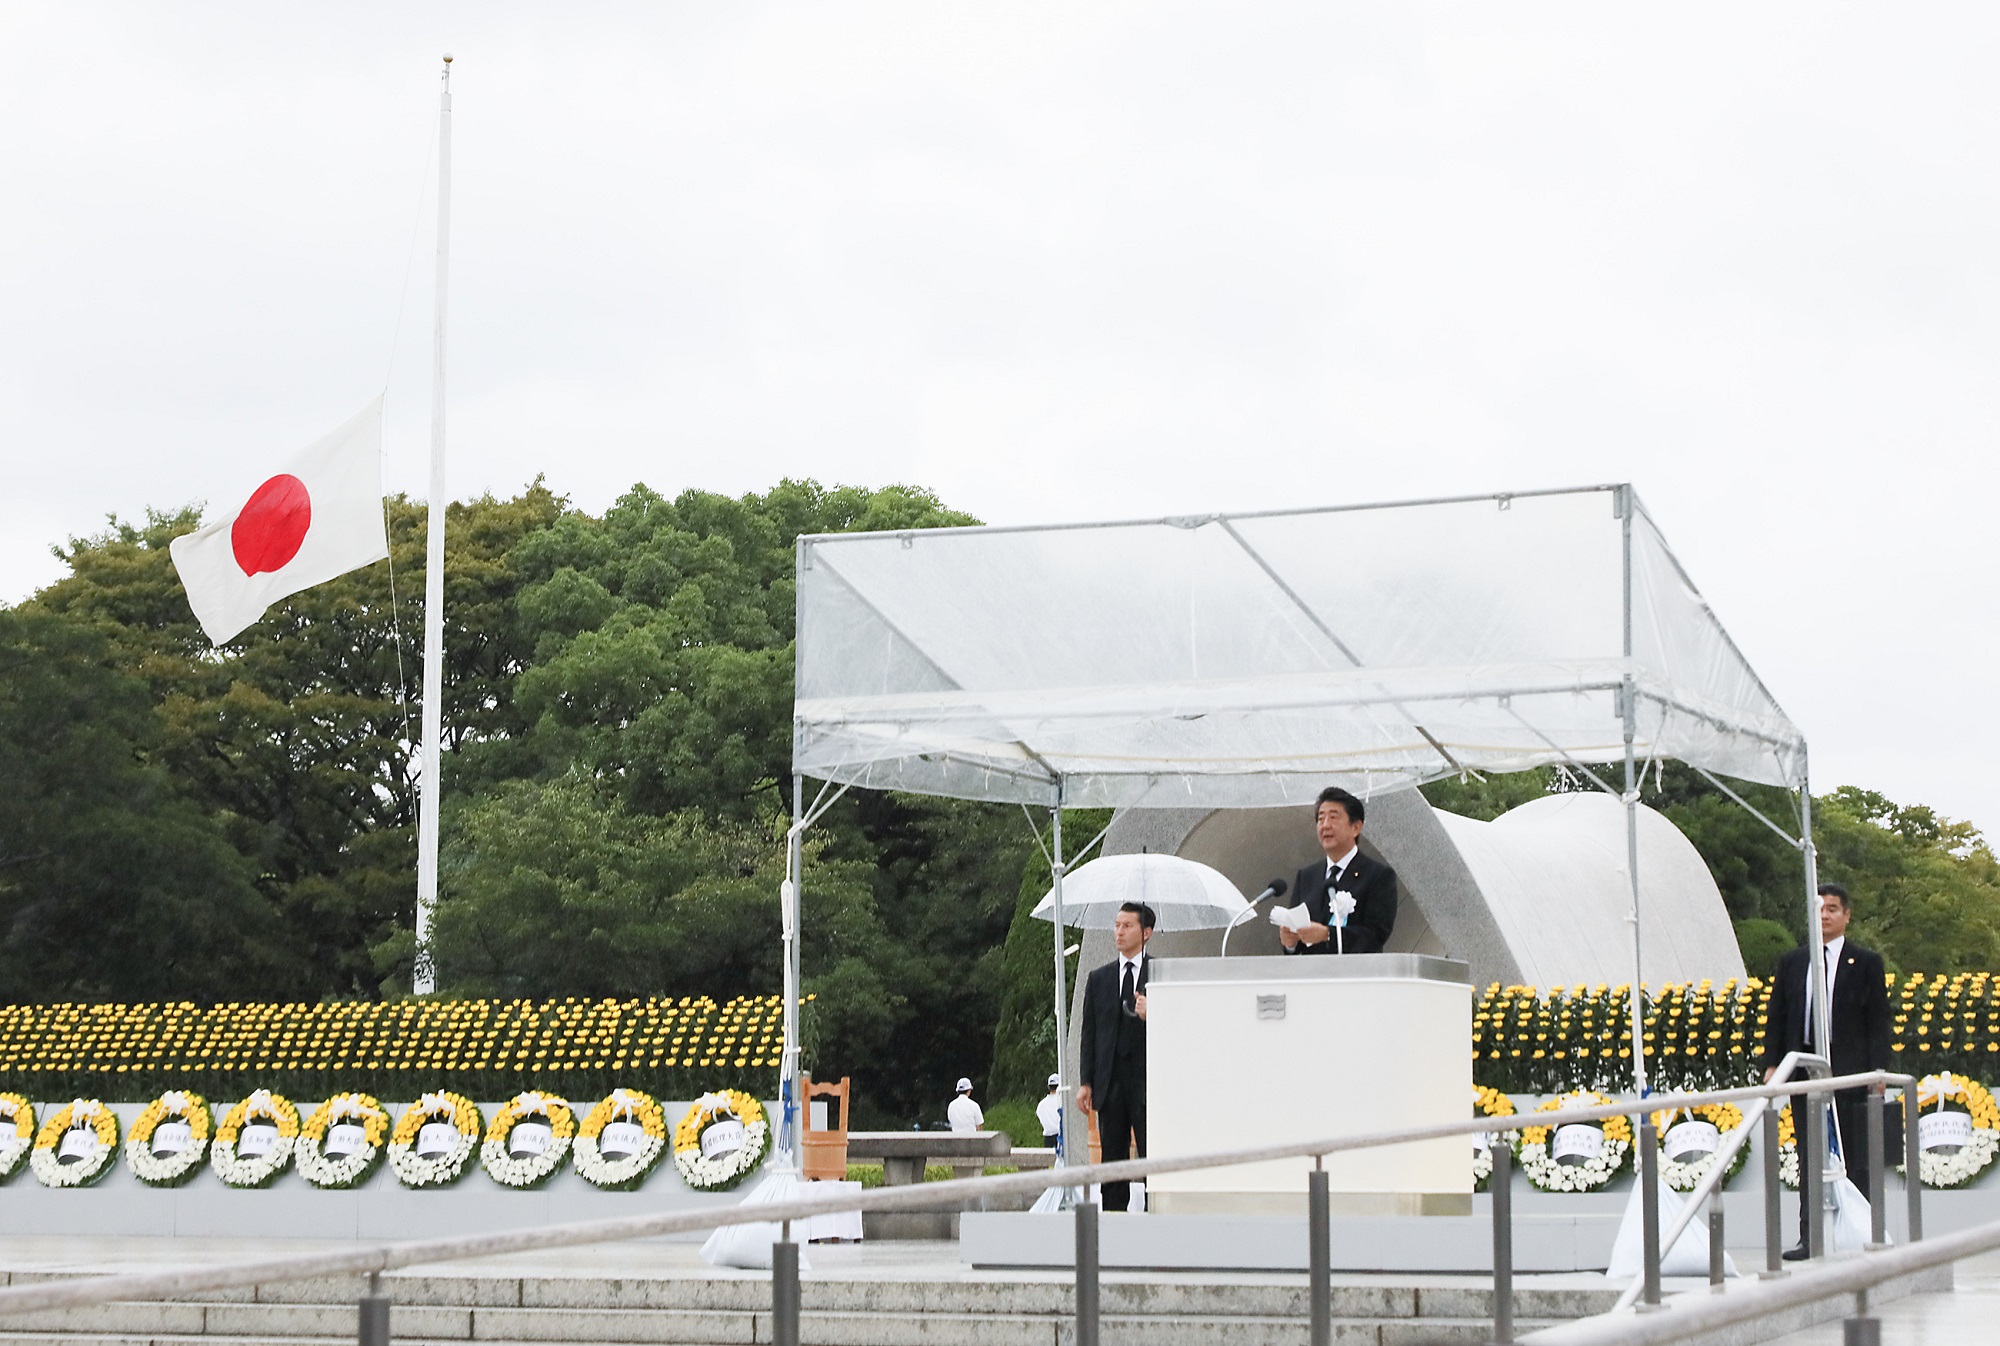 安倍首相 令和元年 広島平和記念式典挨拶